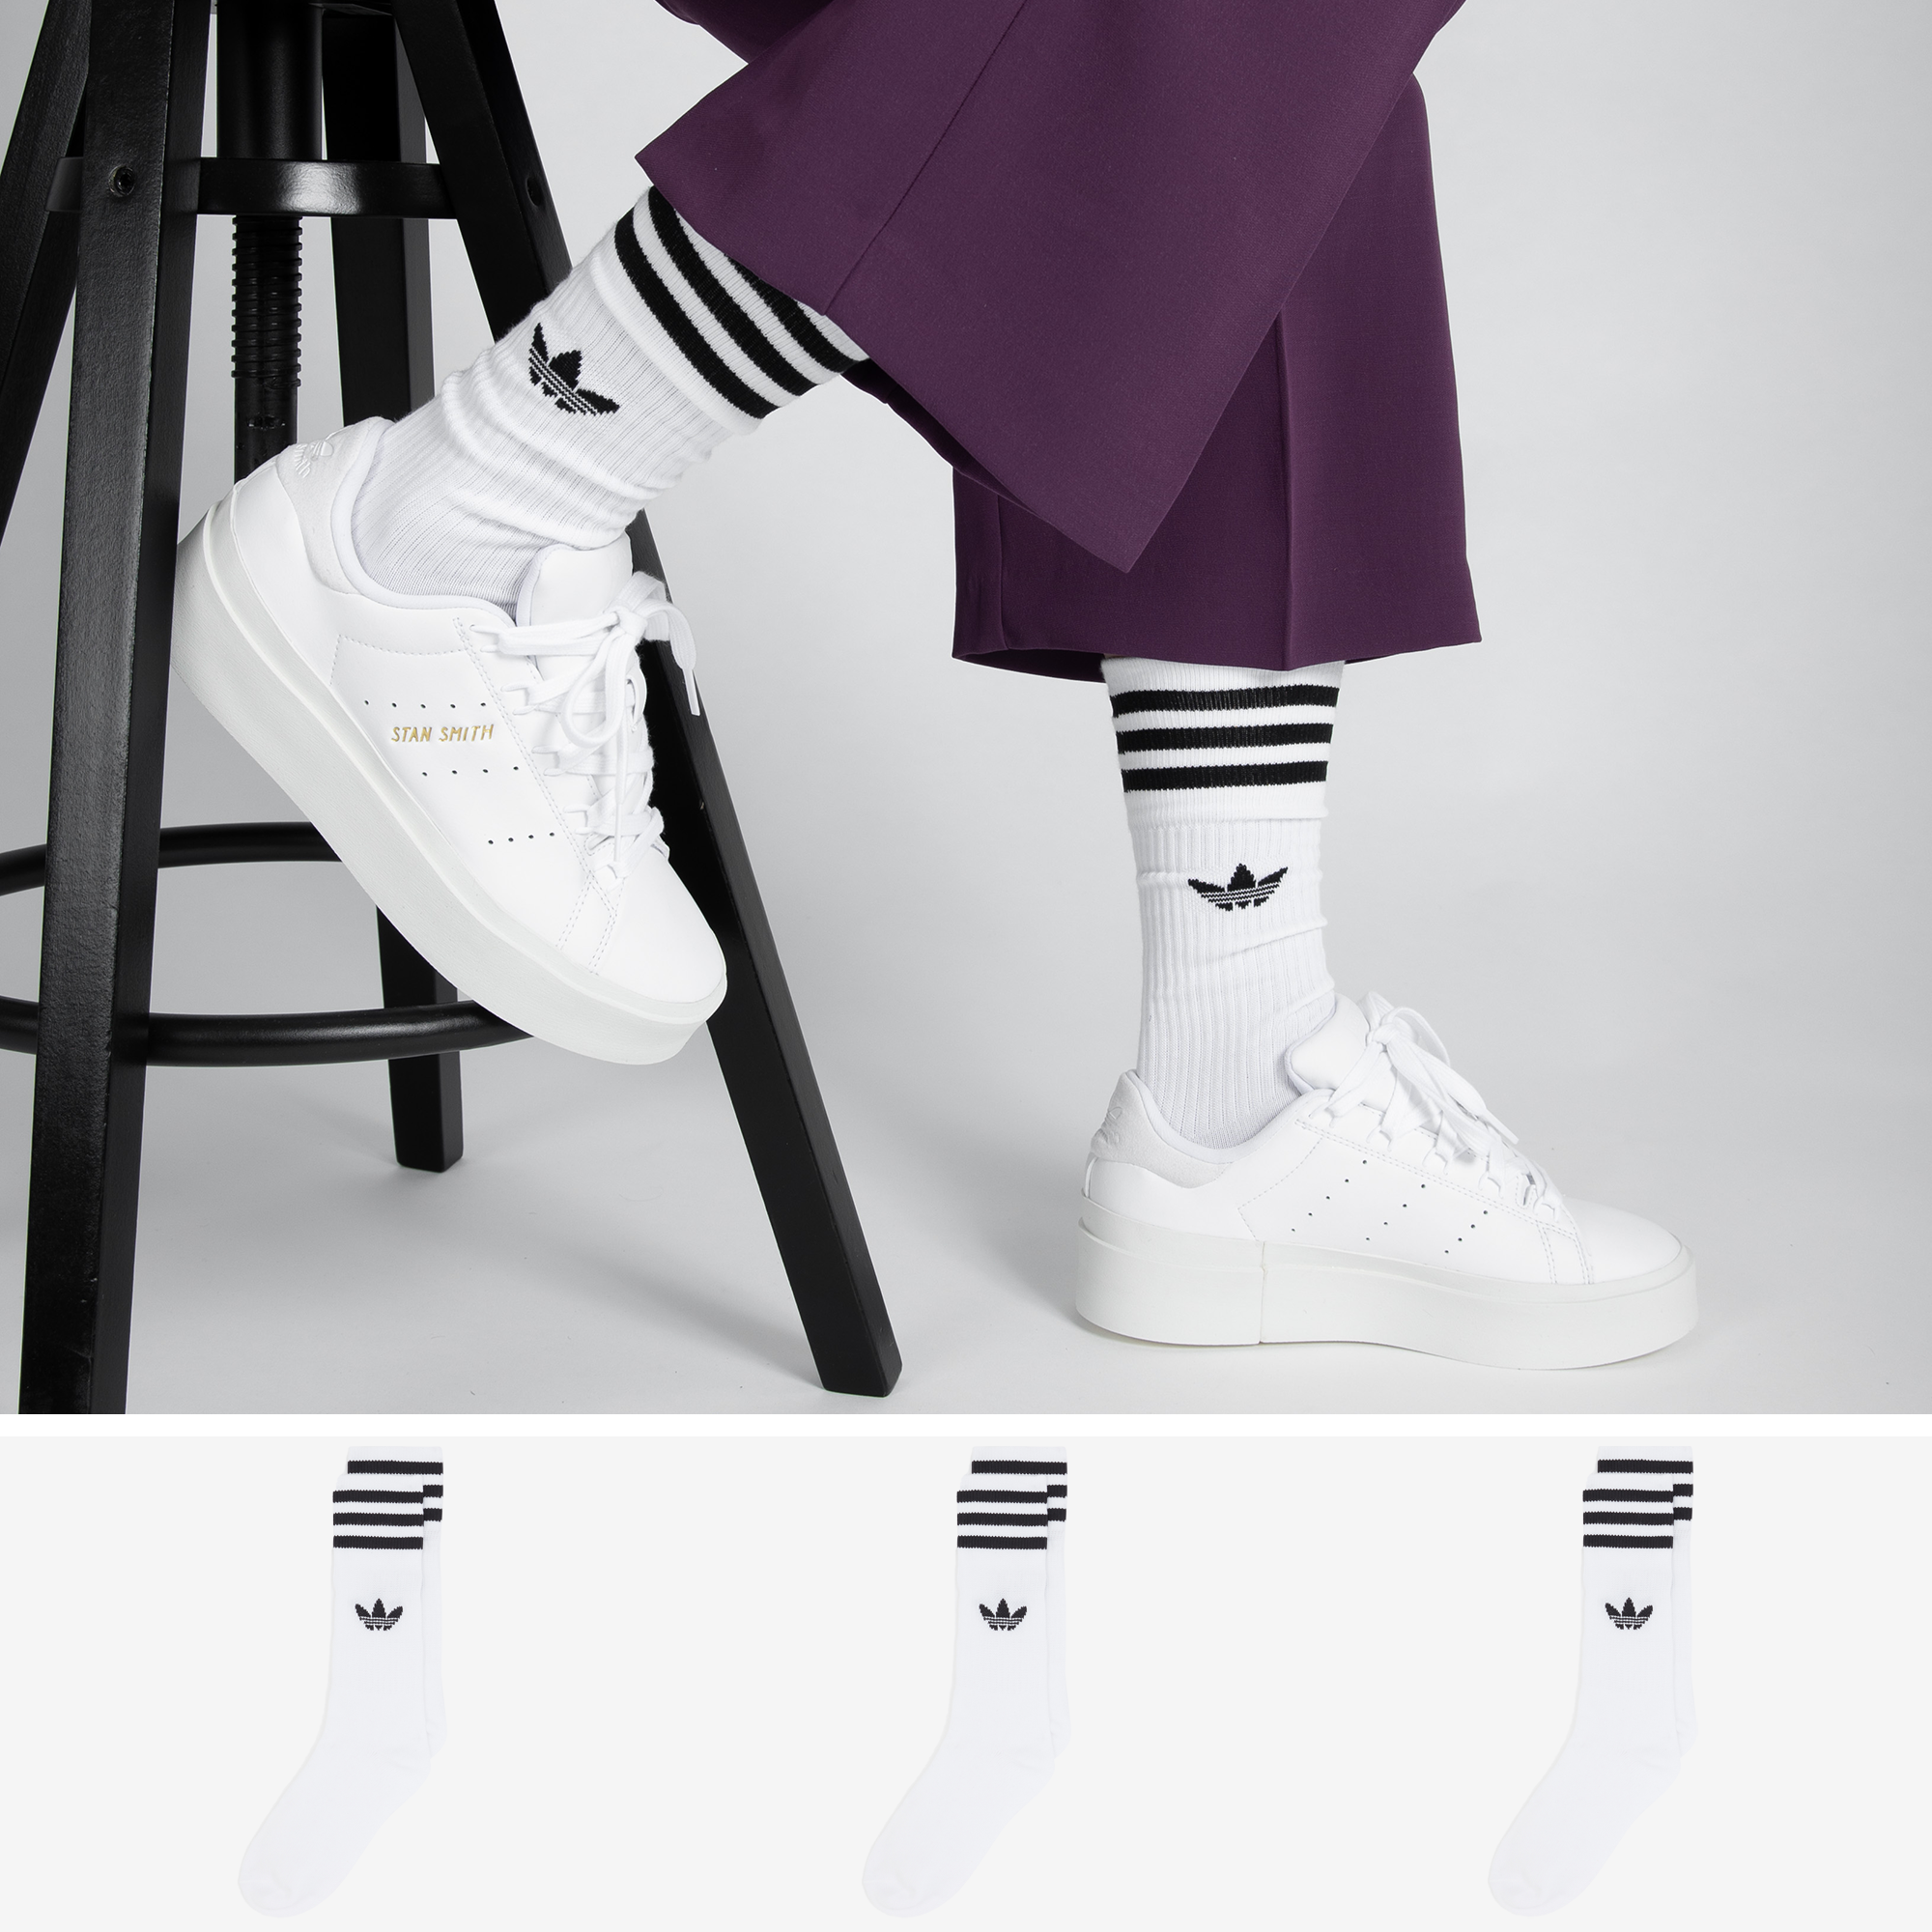 ريمورو adidas original chaussettes وقي